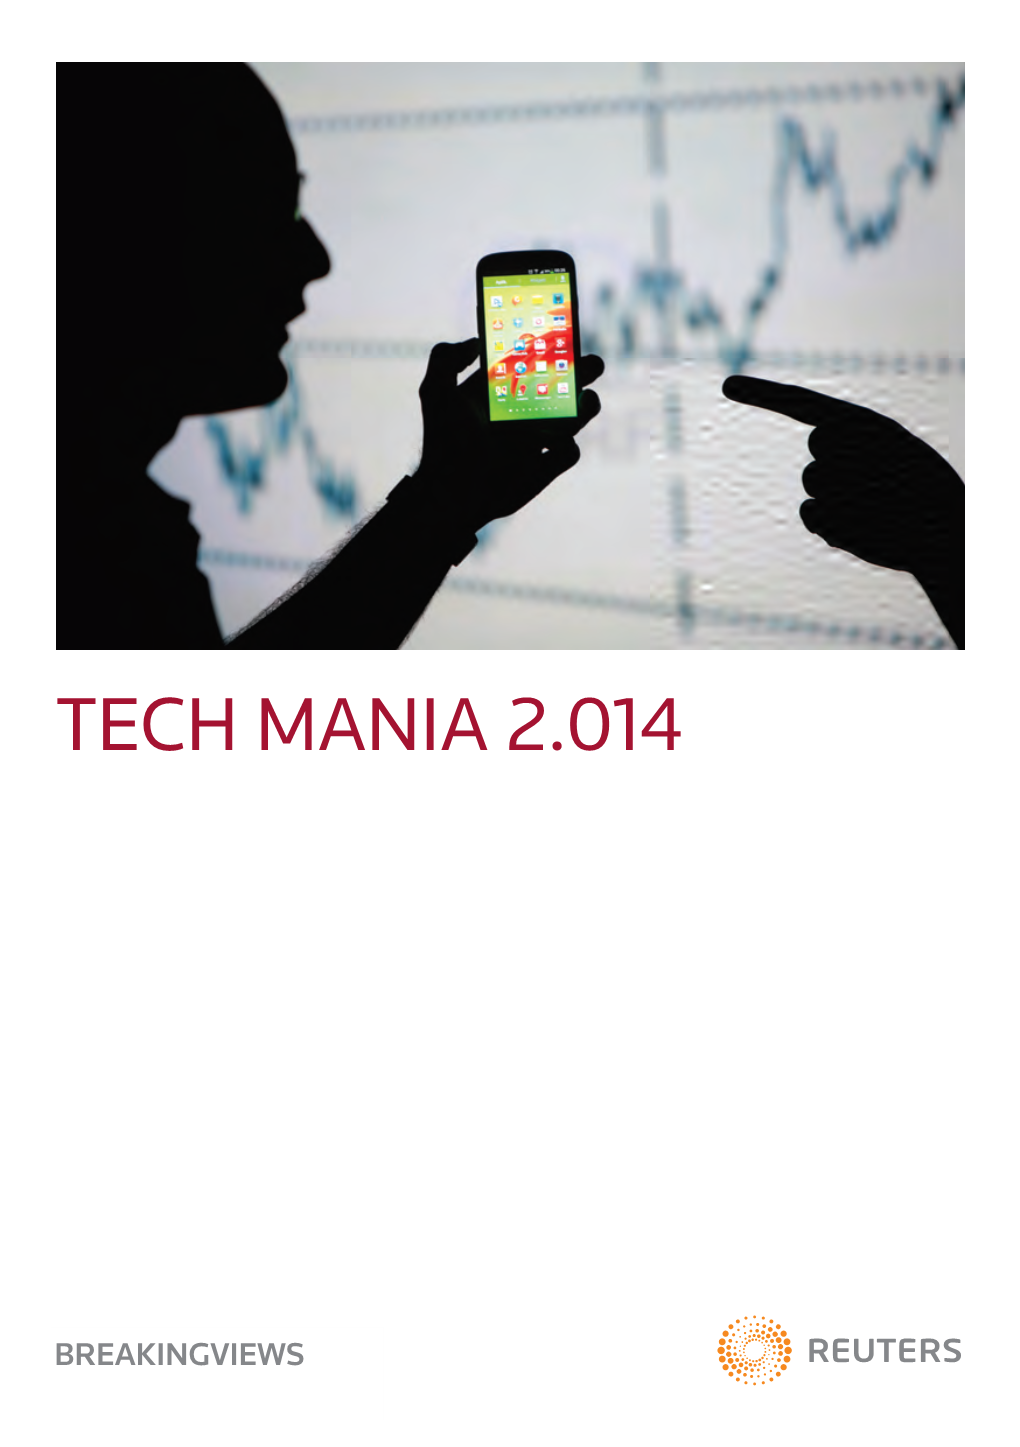 Tech Mania 2.014